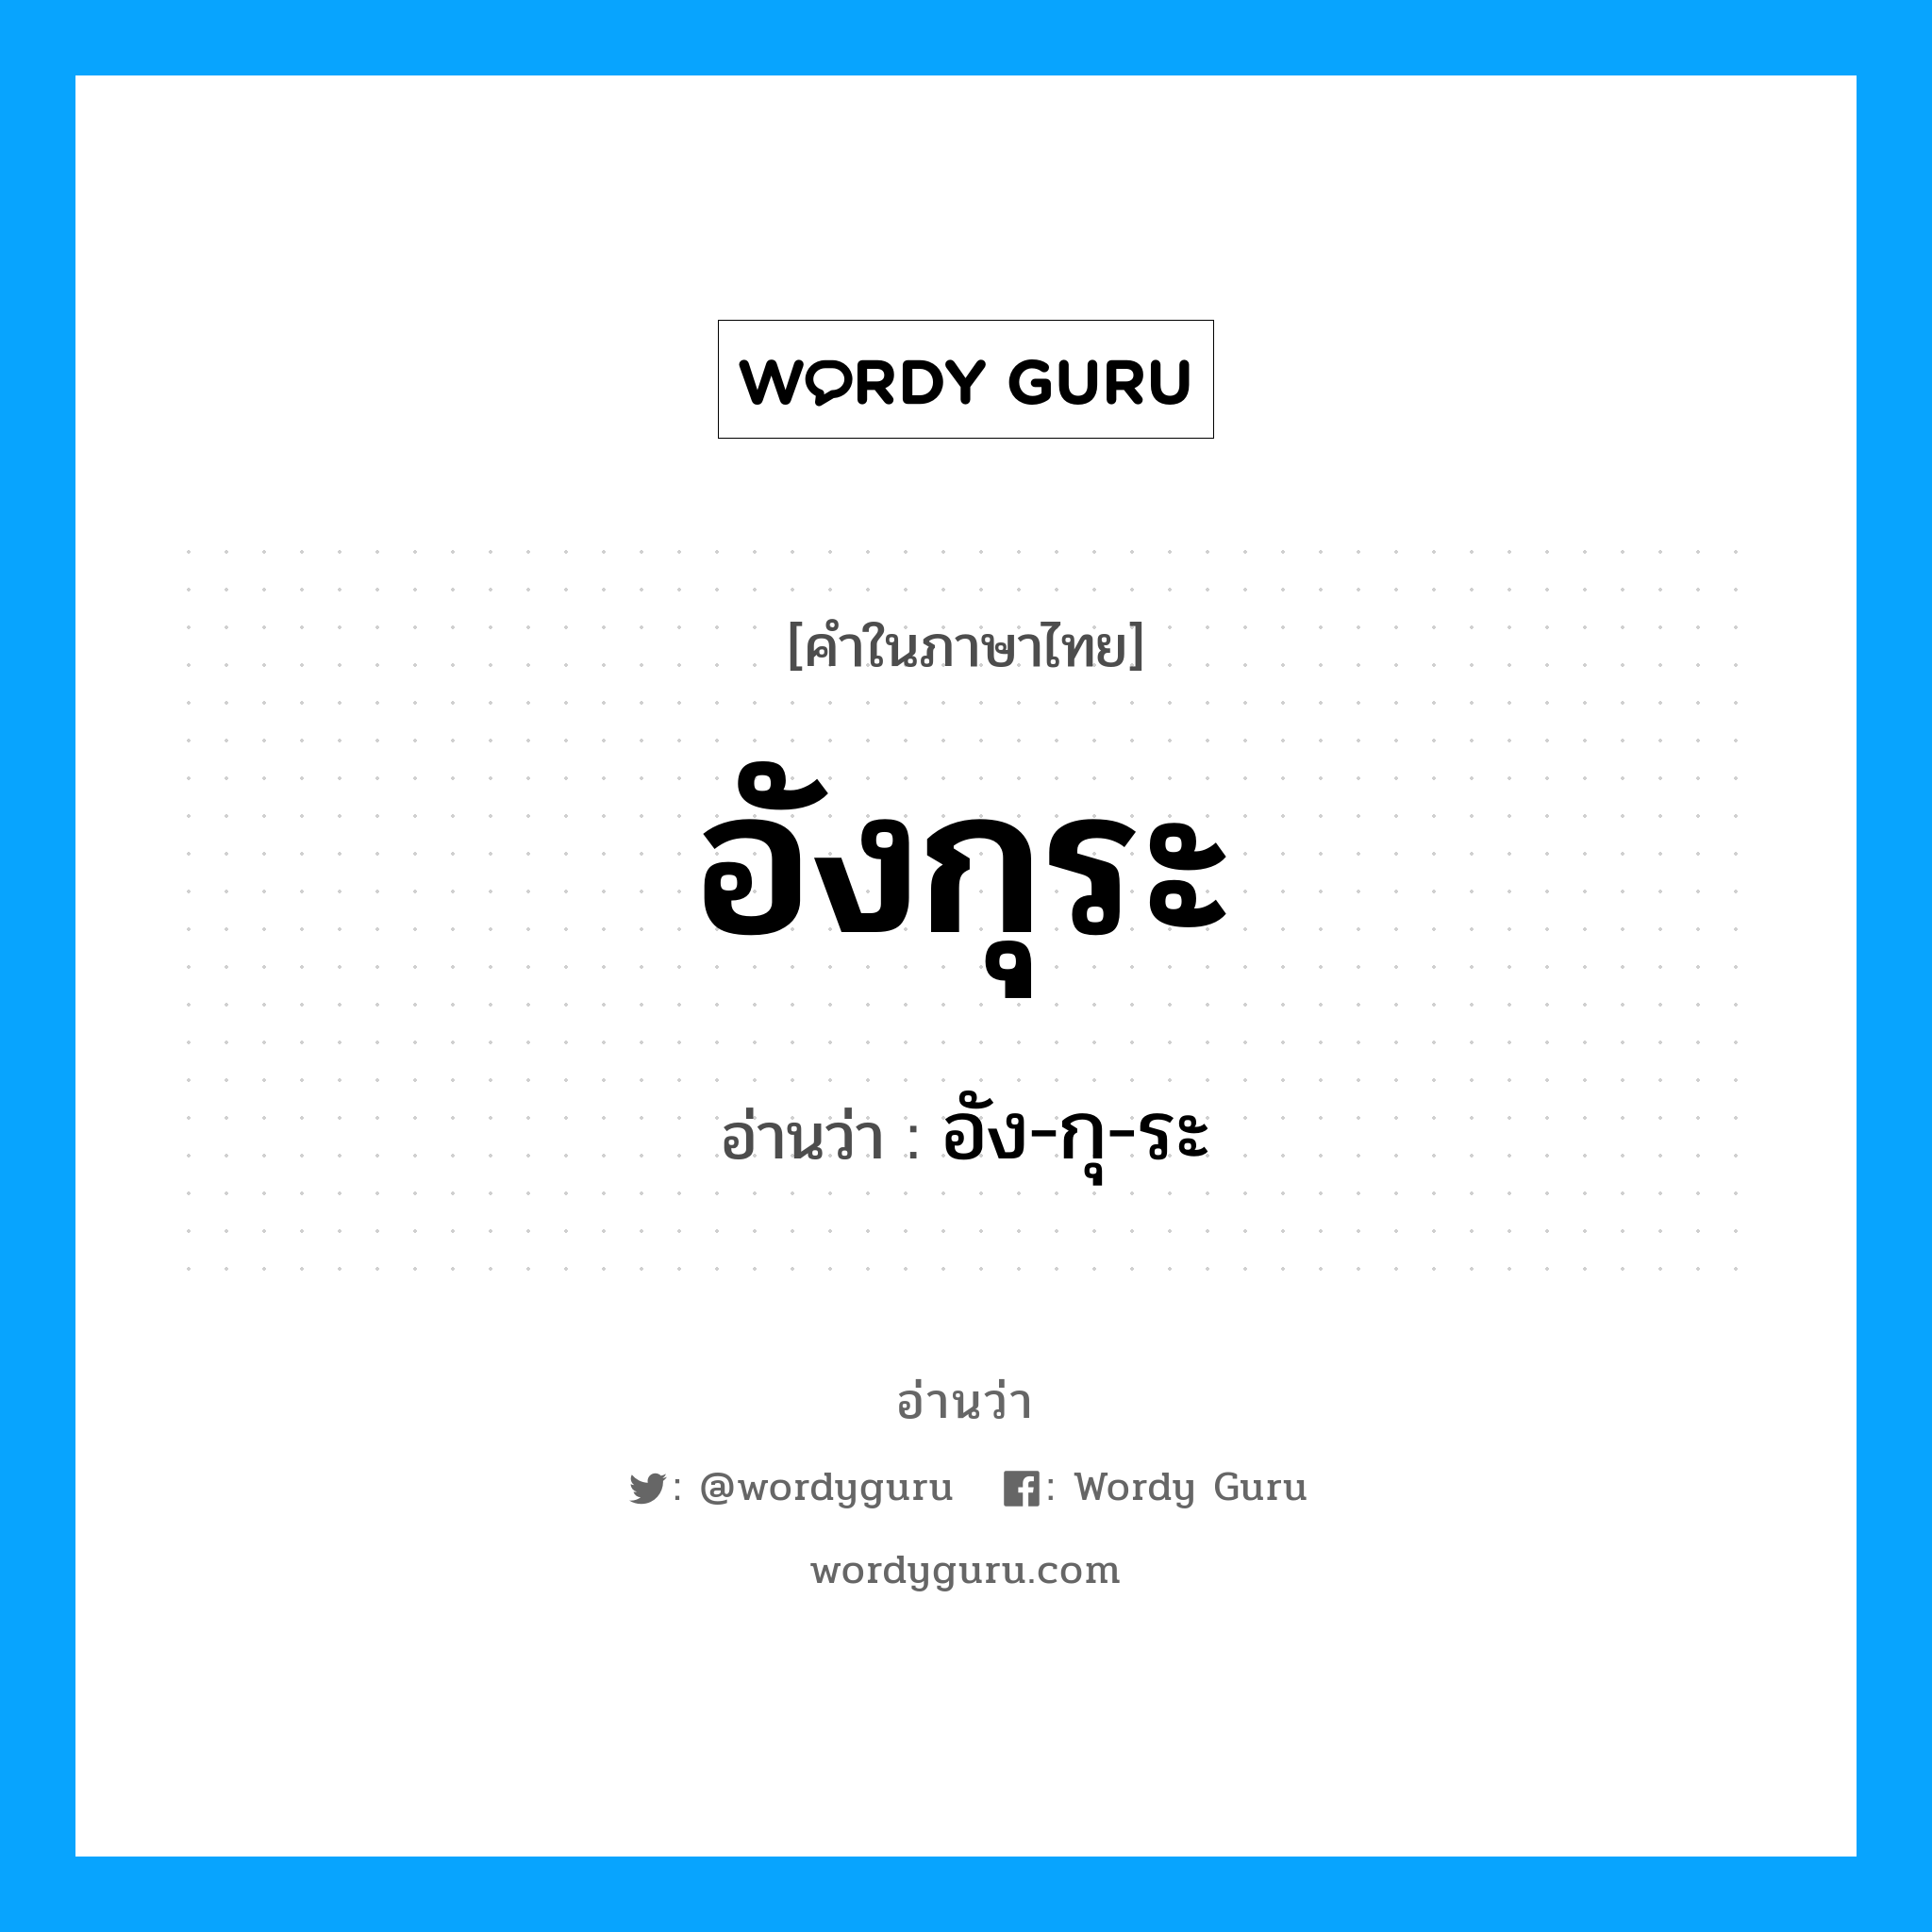 อัง-กุ-ระ เป็นคำอ่านของคำไหน?, คำในภาษาไทย อัง-กุ-ระ อ่านว่า อังกุระ